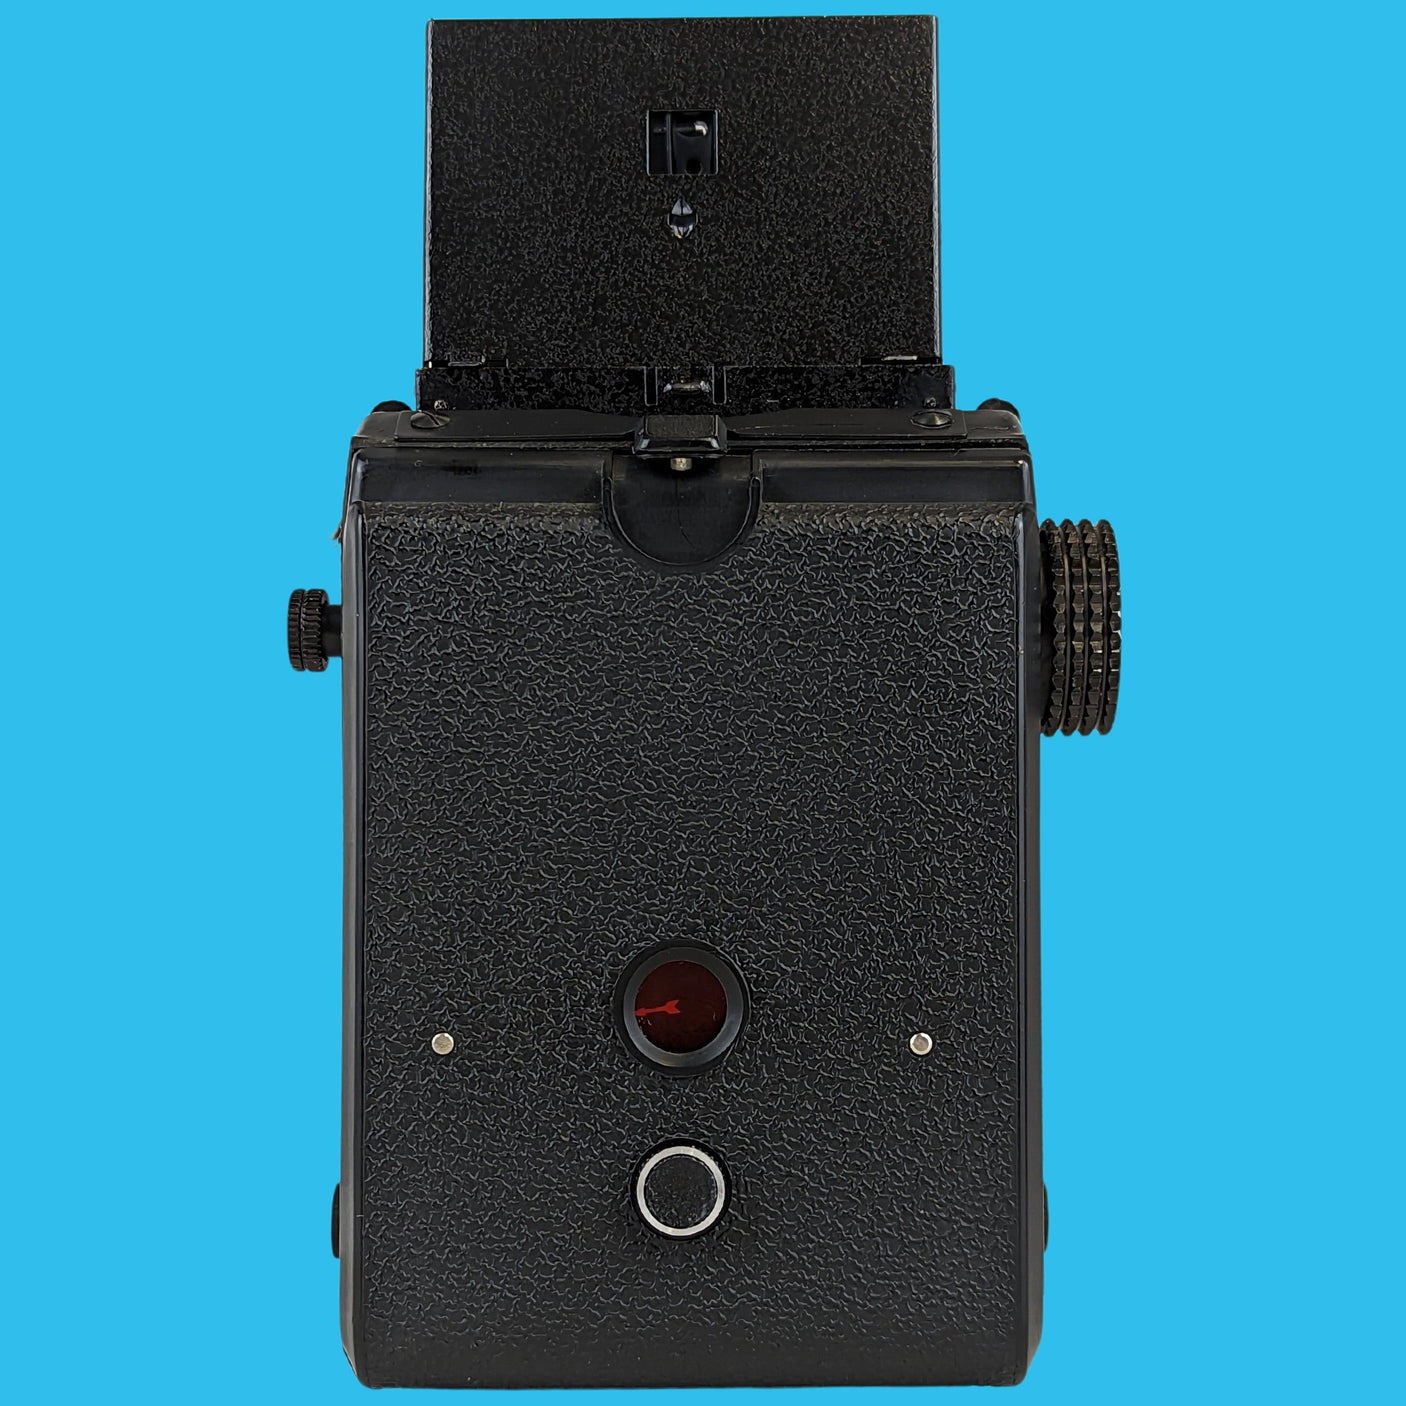 Lubitel 166B With 75mm F4.5 Lens. TLR 6X6 Medium Format Film Camera.